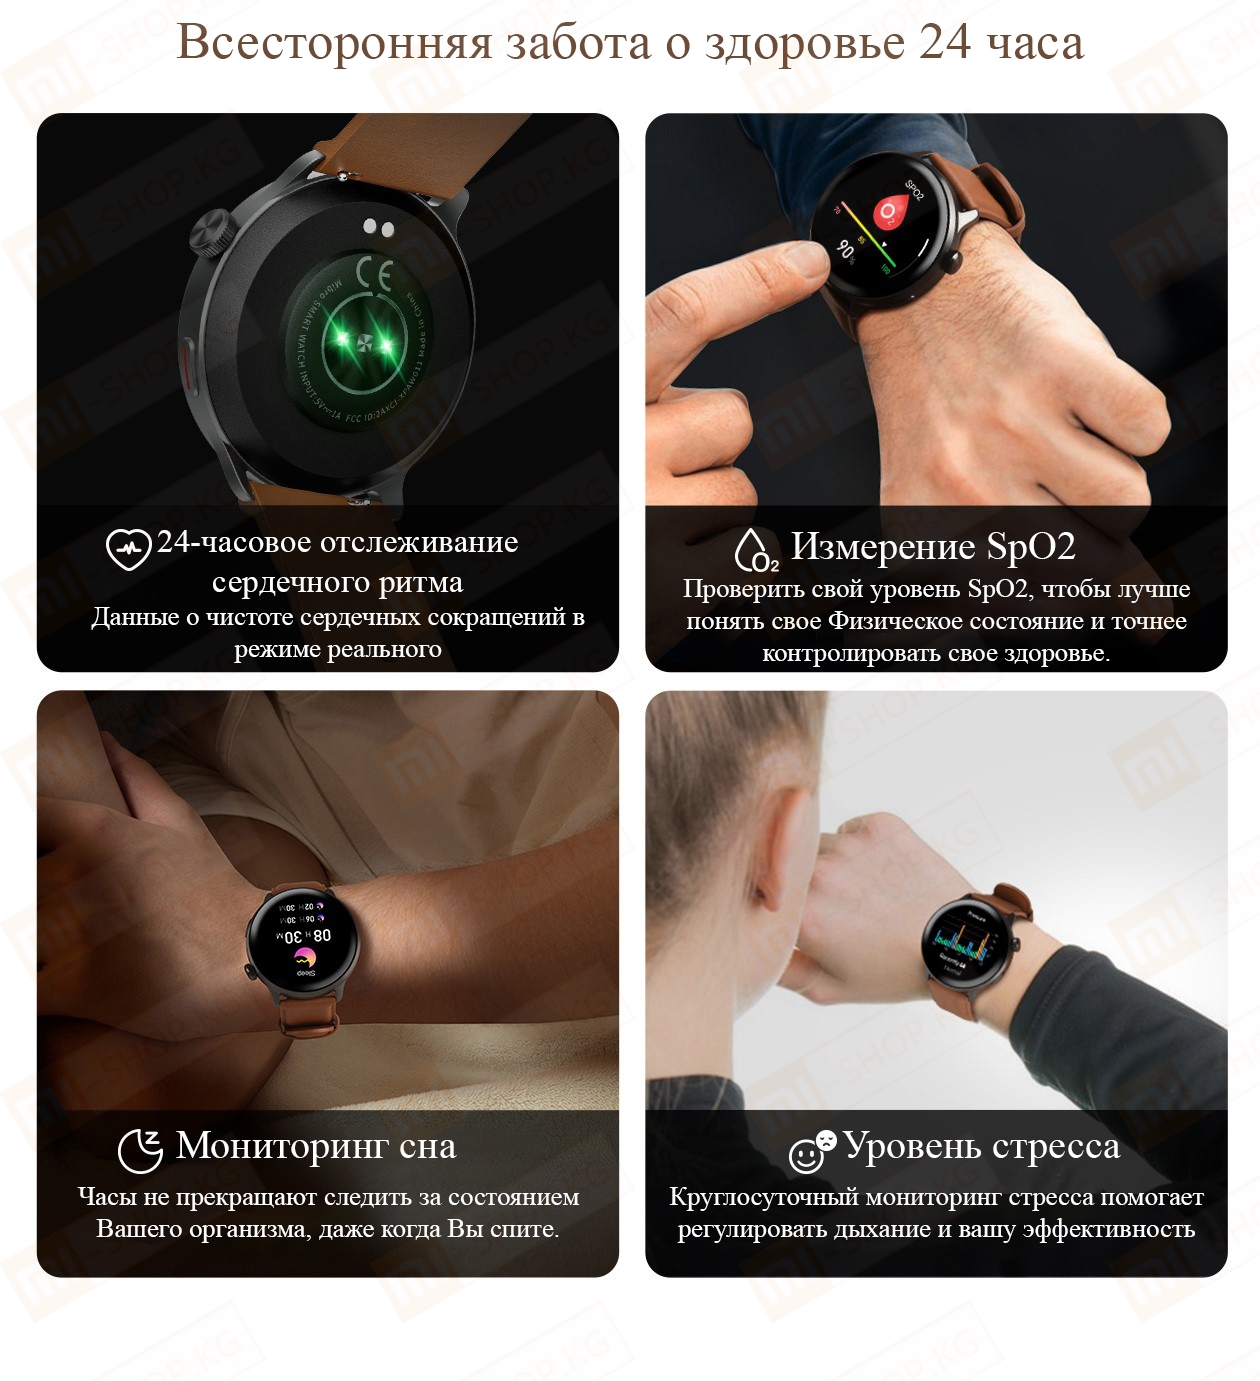  Xiaomi Mibro Smart Watch Lite 2